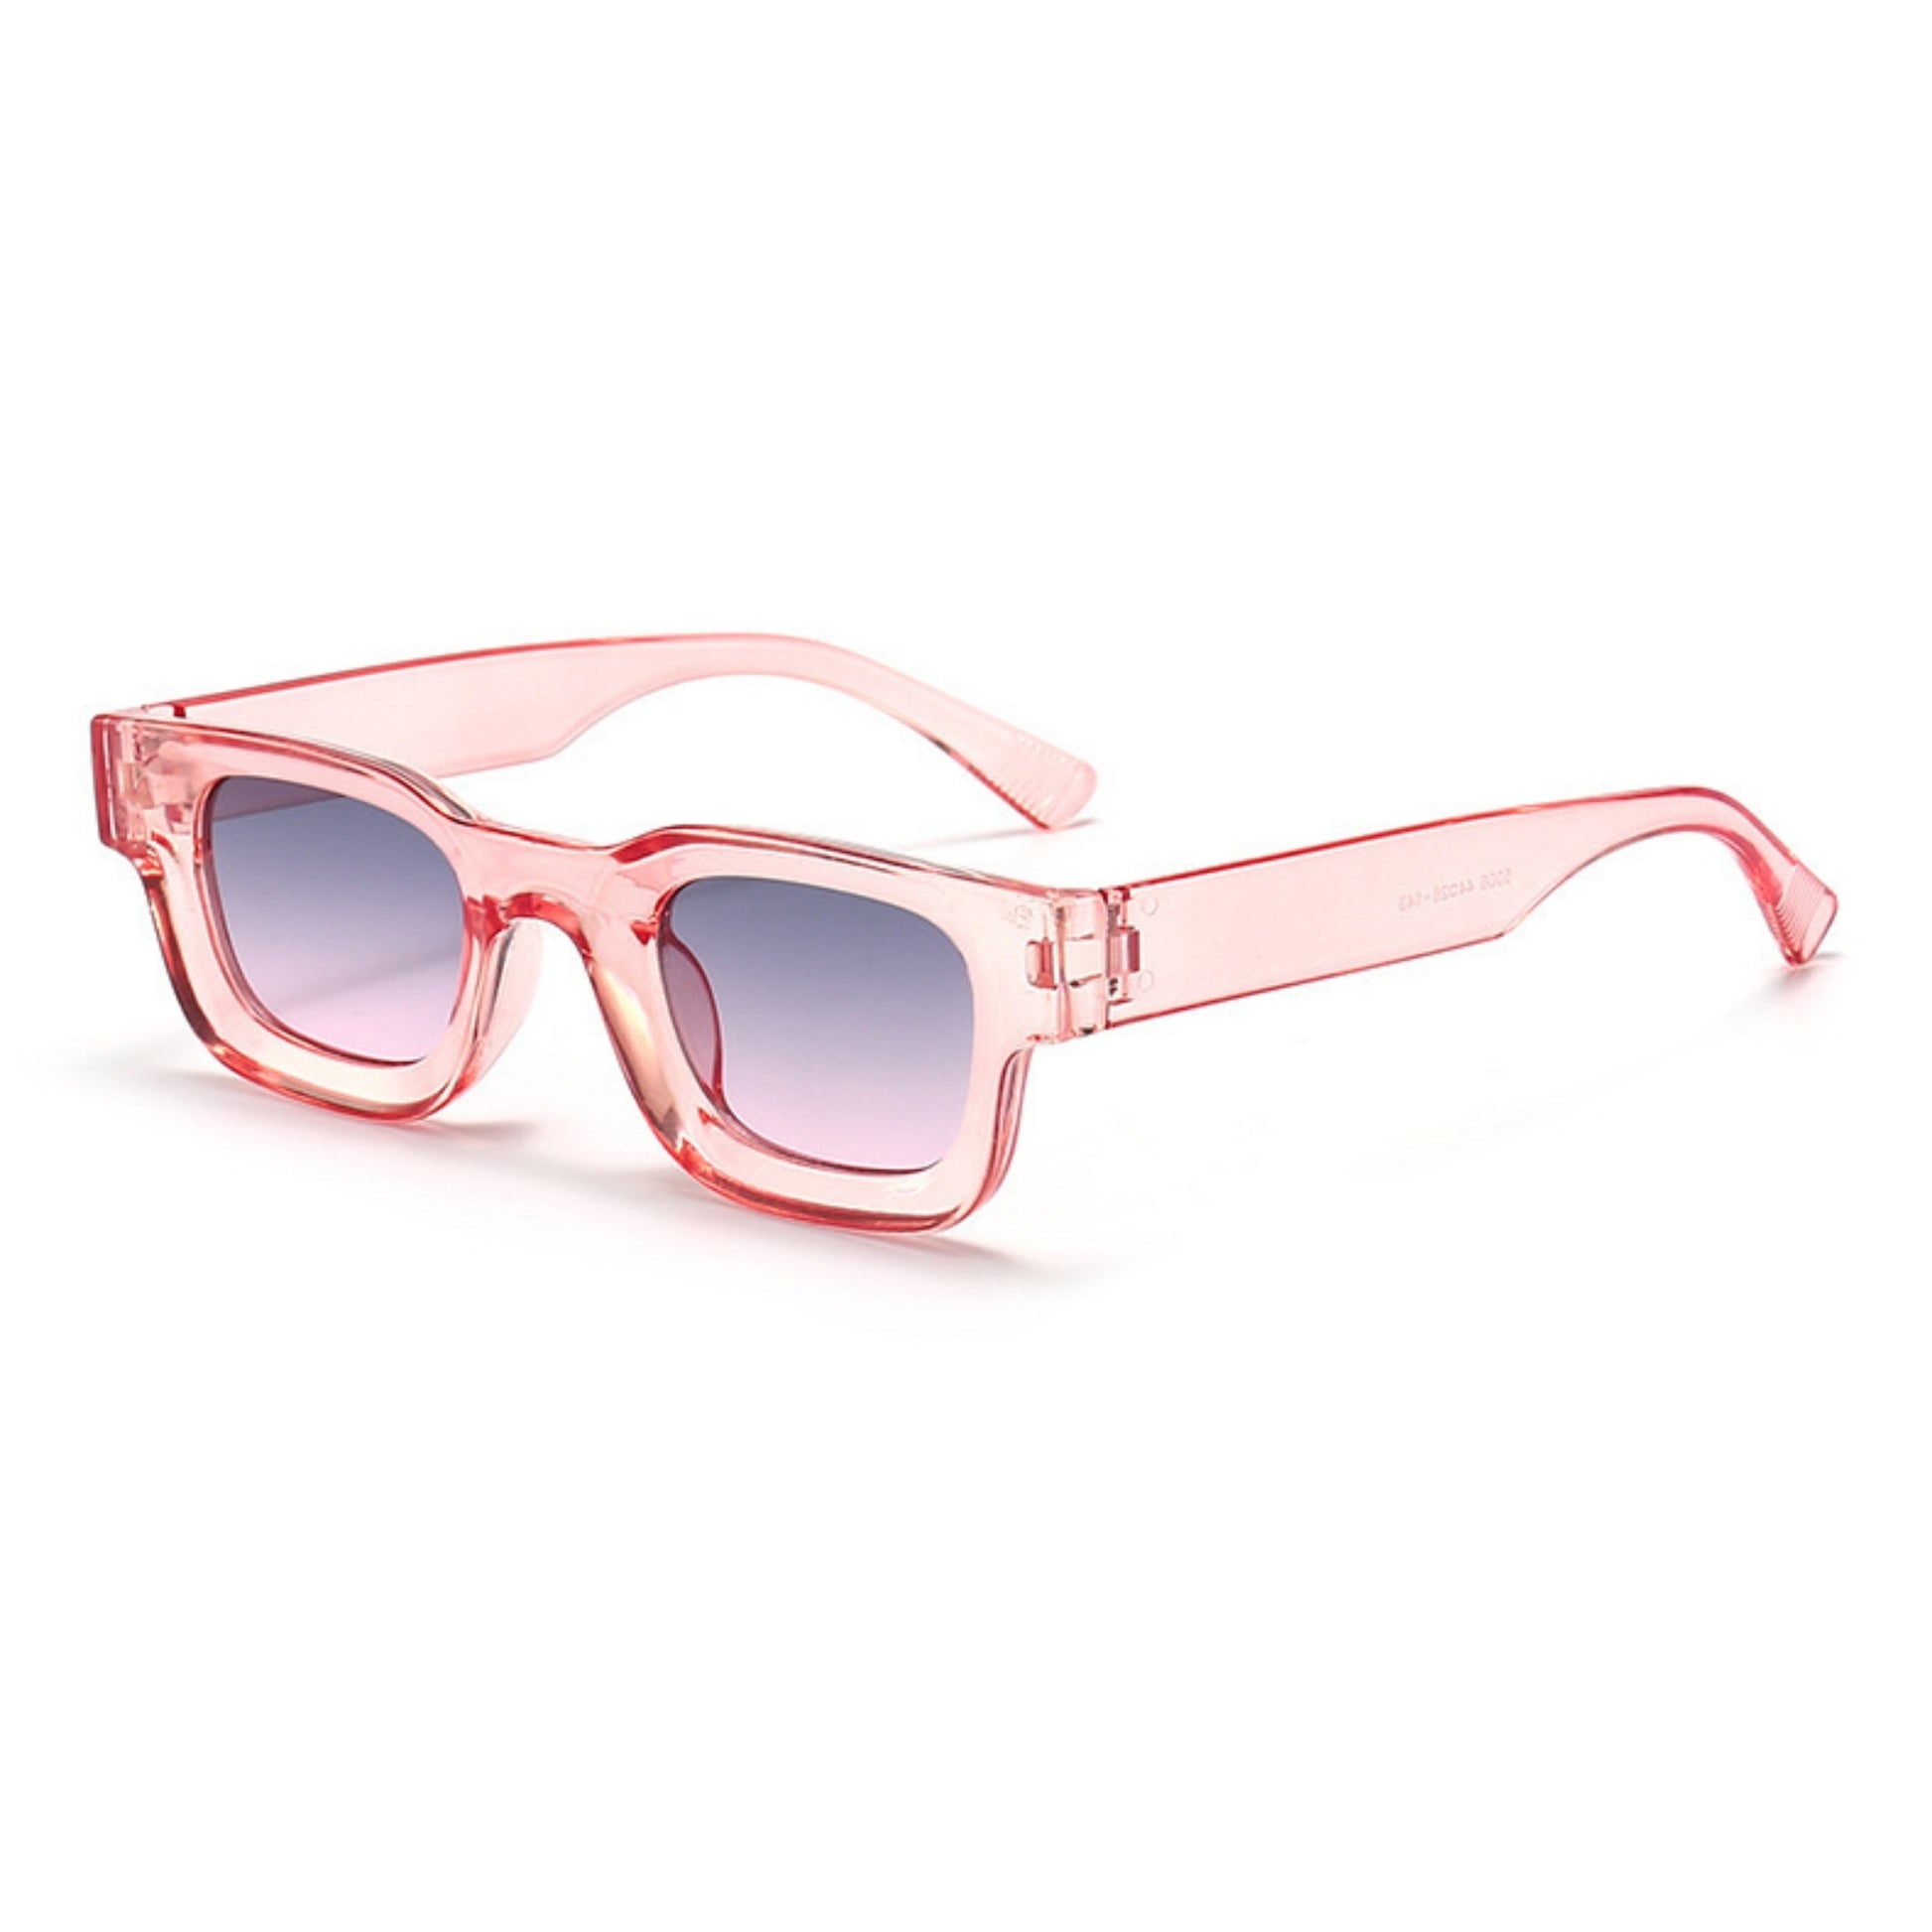 Τετράγωνα Γυαλιά ηλίου Taf από την Exposure Sunglasses με προστασία UV400 με ροζ σκελετό και μπλε φακό.Πλαινή όψη.